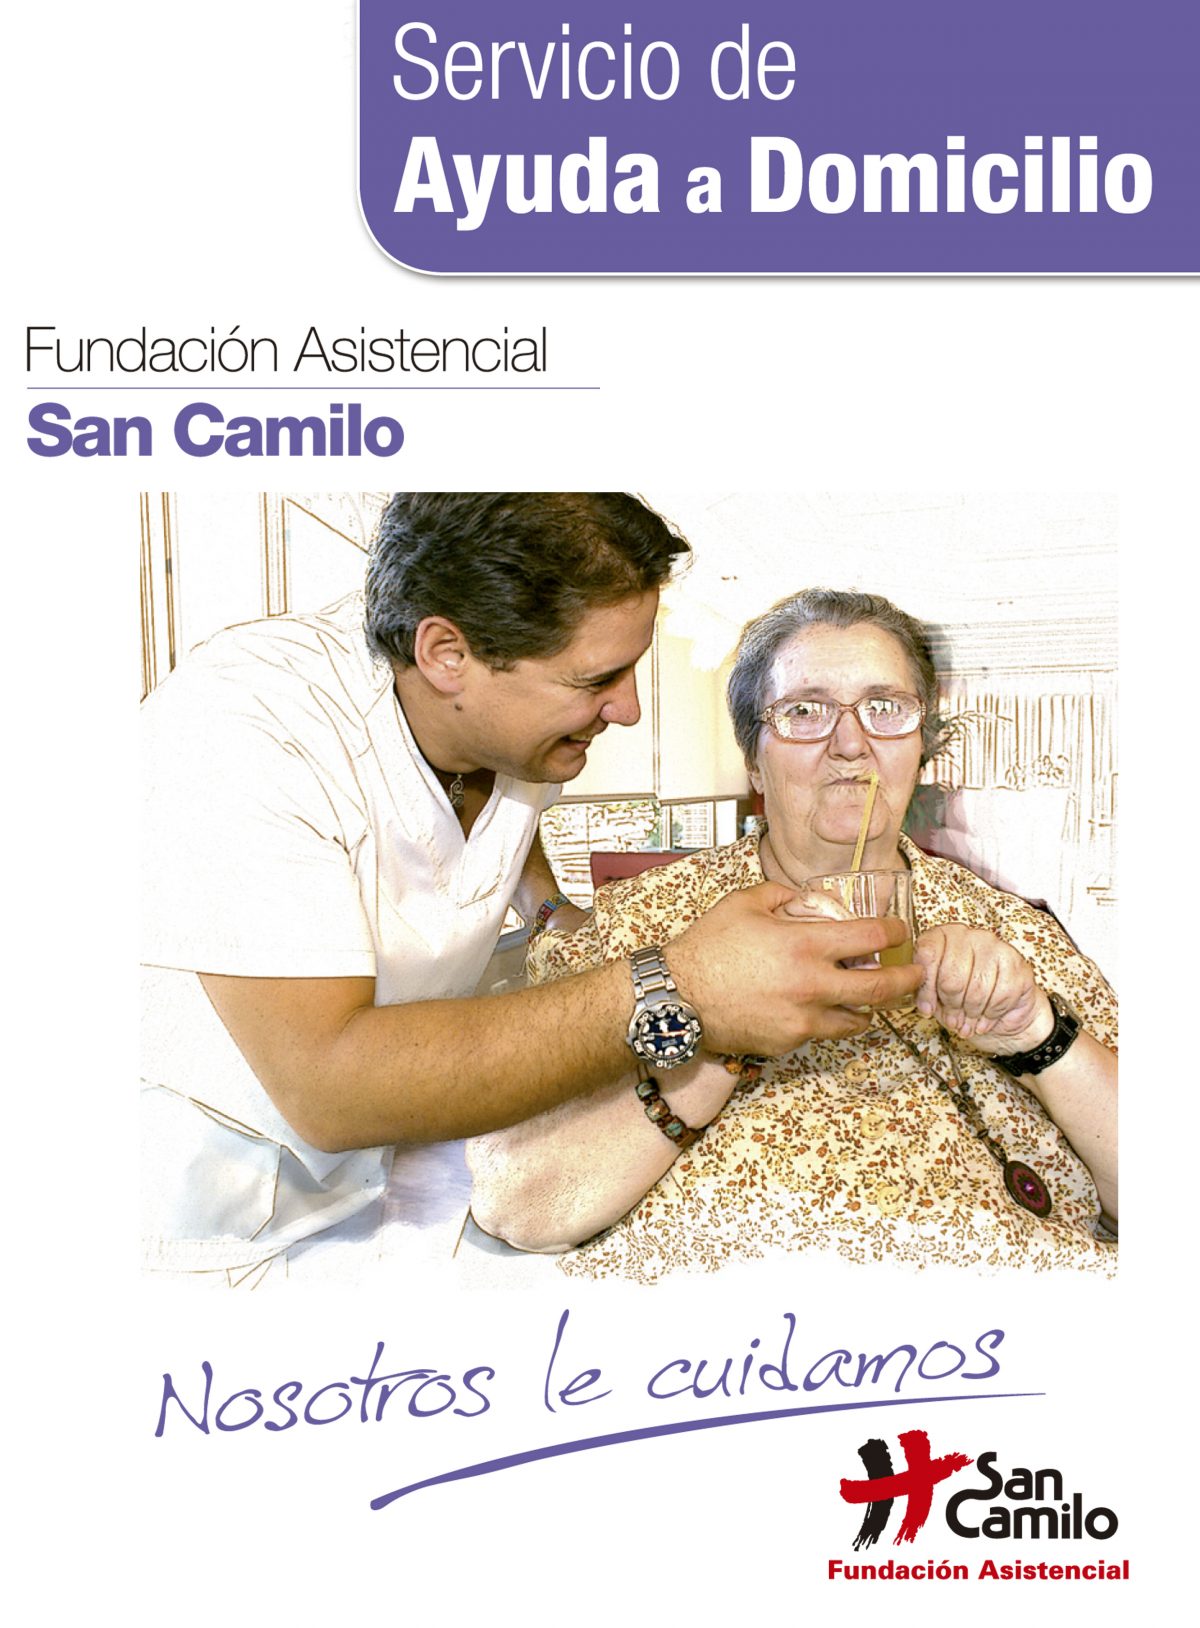 El Servicio de Ayuda a Domicilio de la Fundación Asistencial San Camilo presenta su balance del año 2017